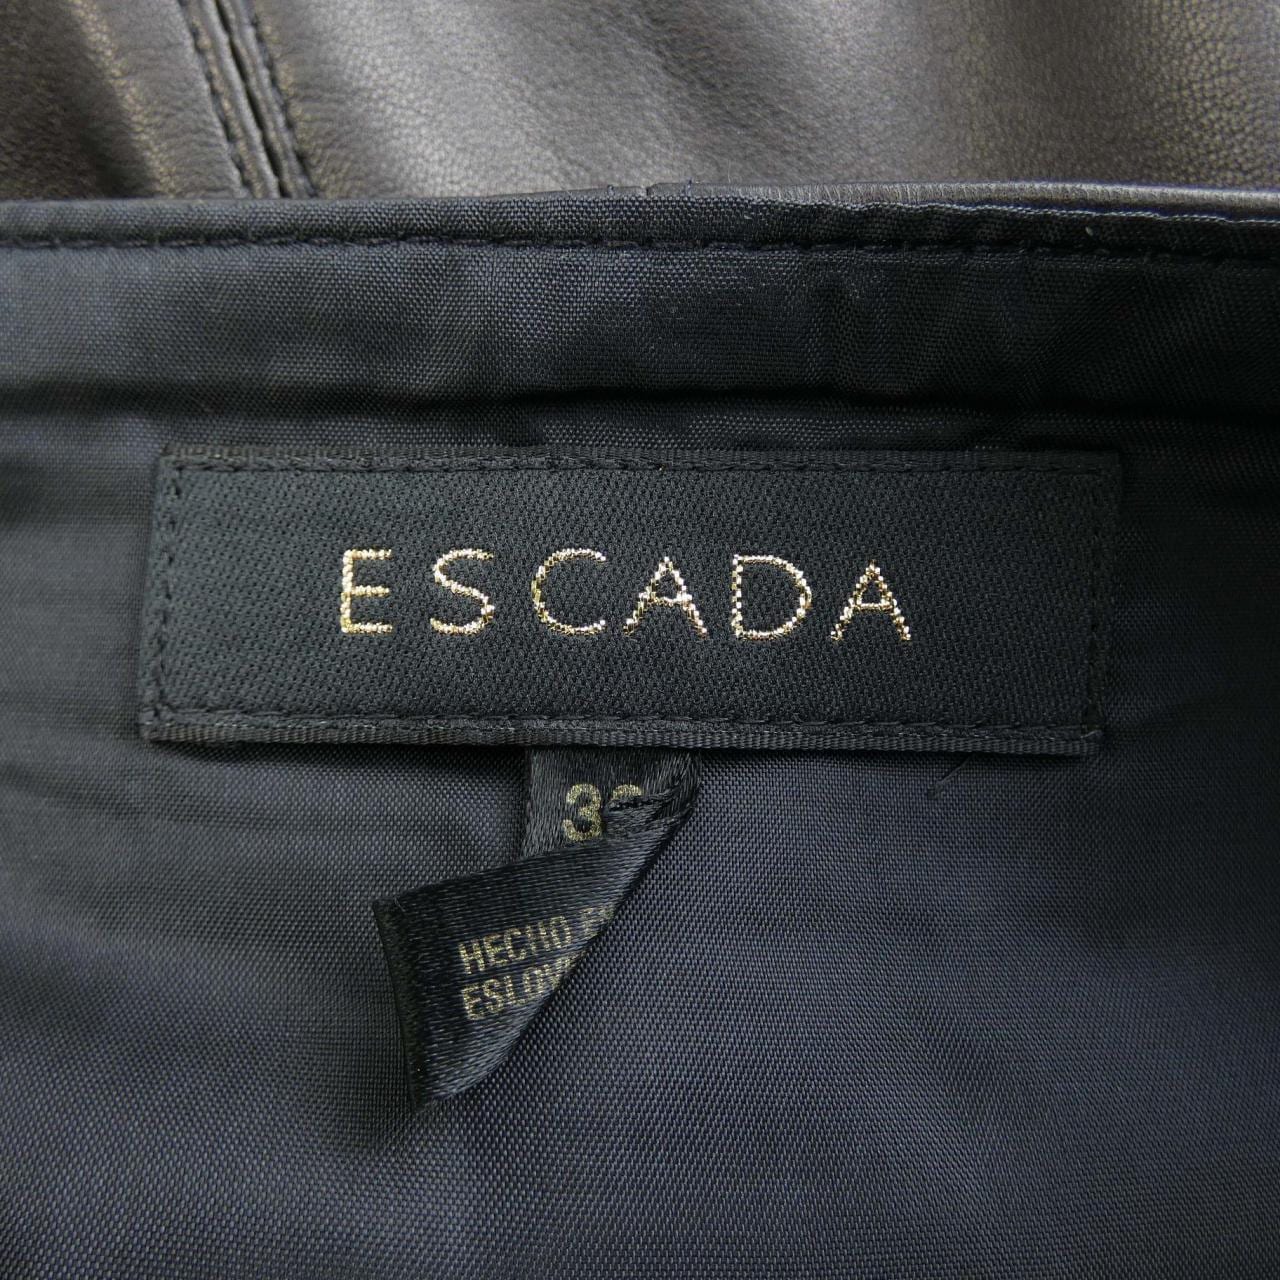 エスカーダ ESCADA スカート